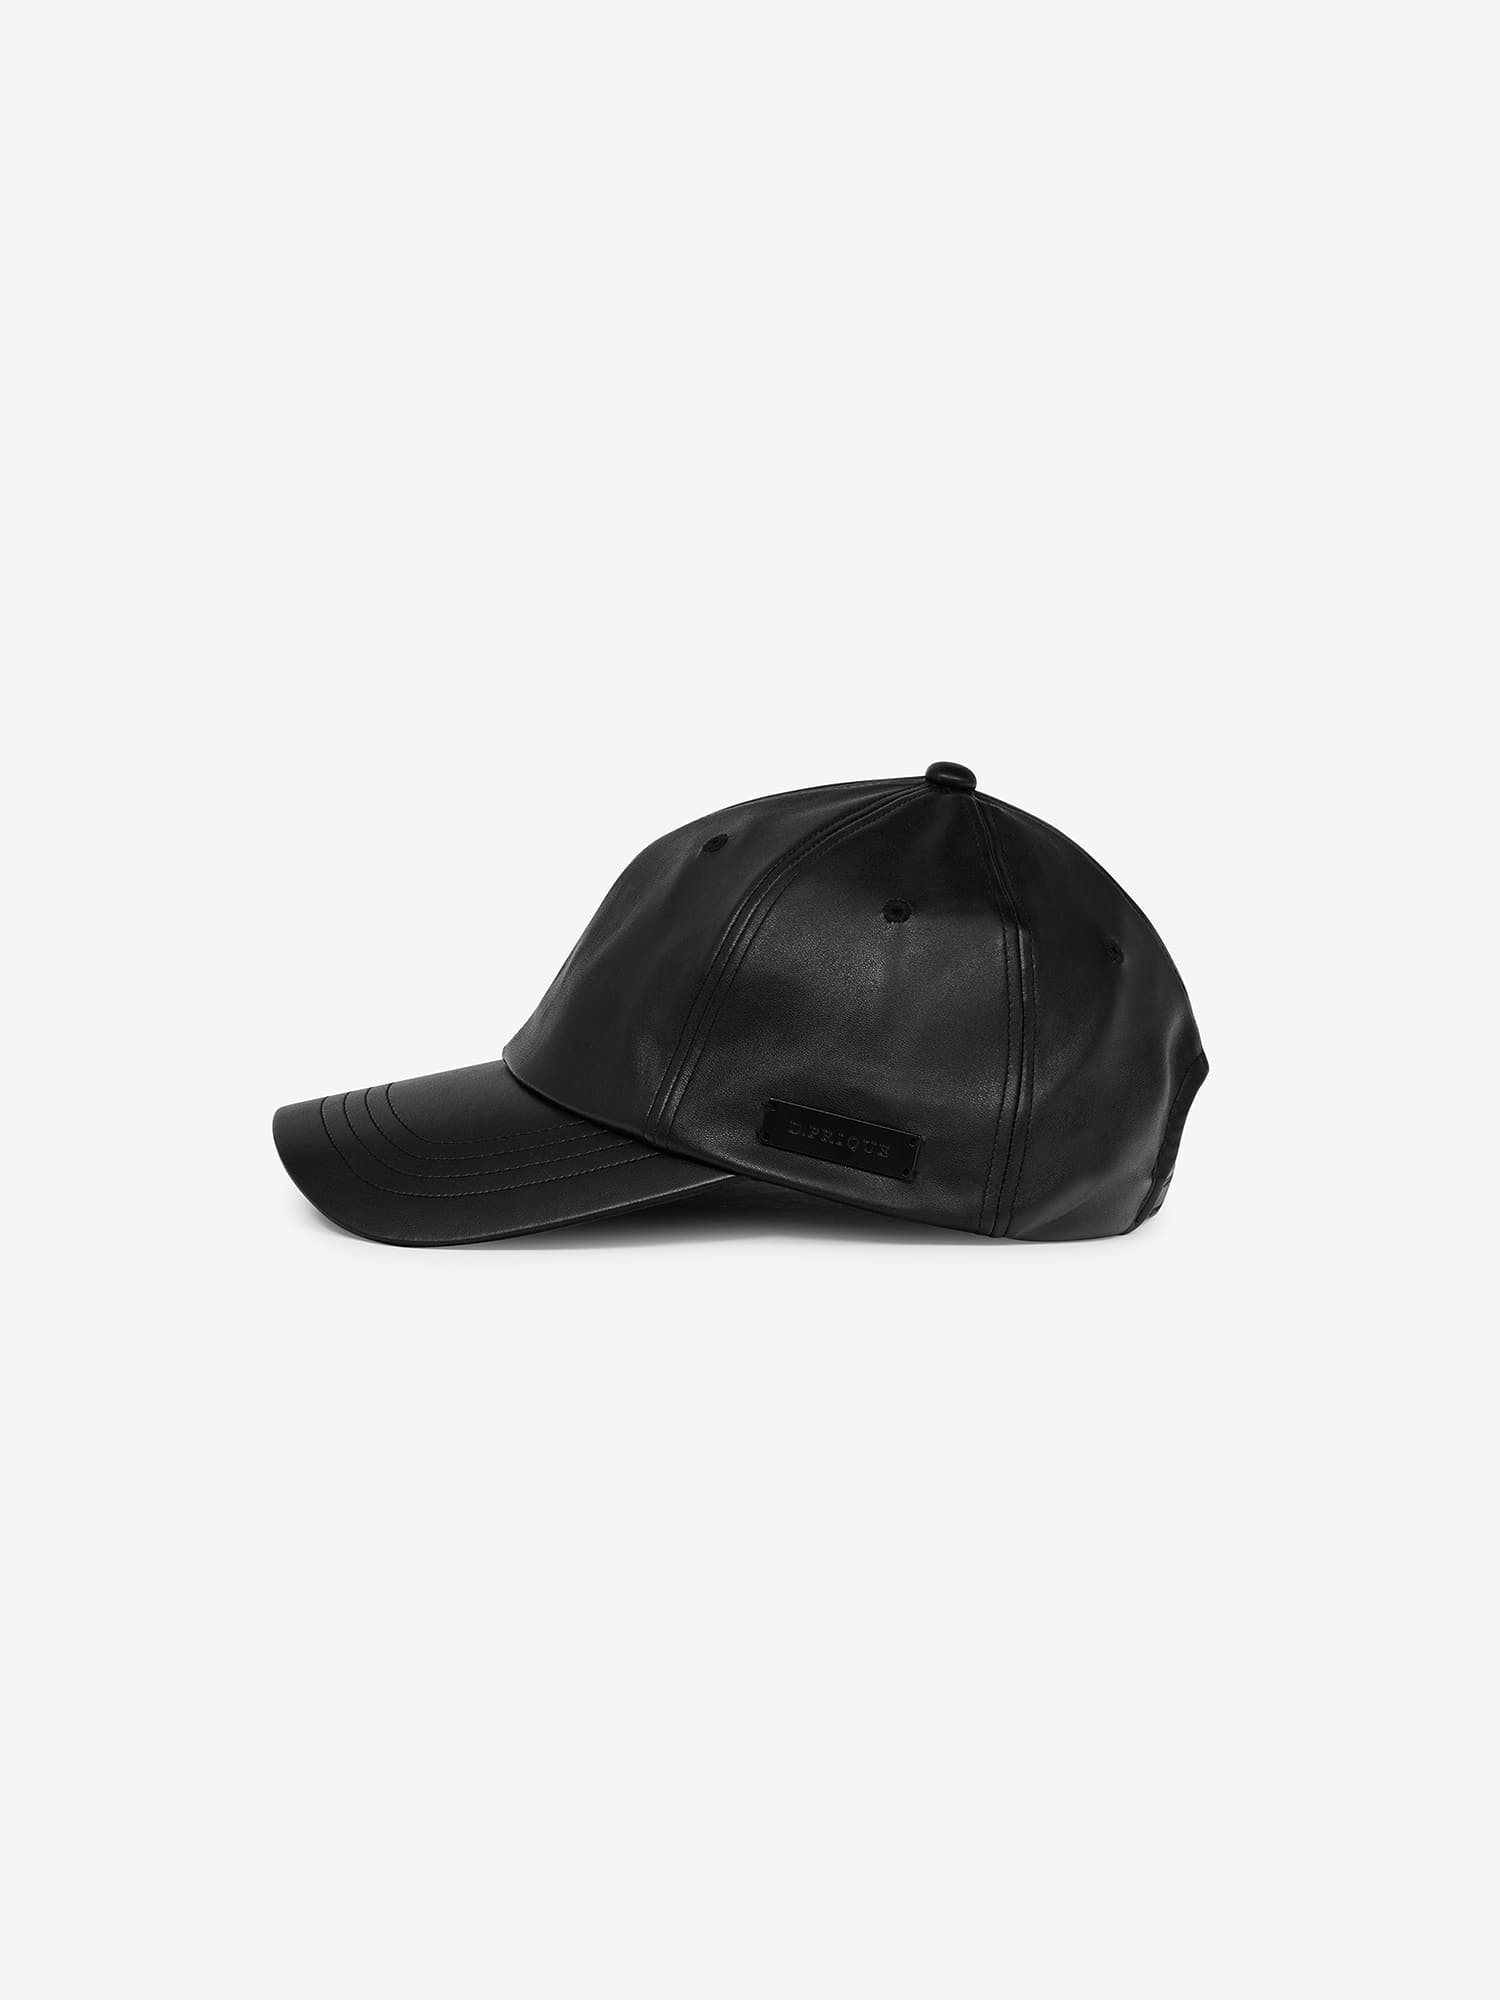 ECO-LEATHER CAP - BLACK